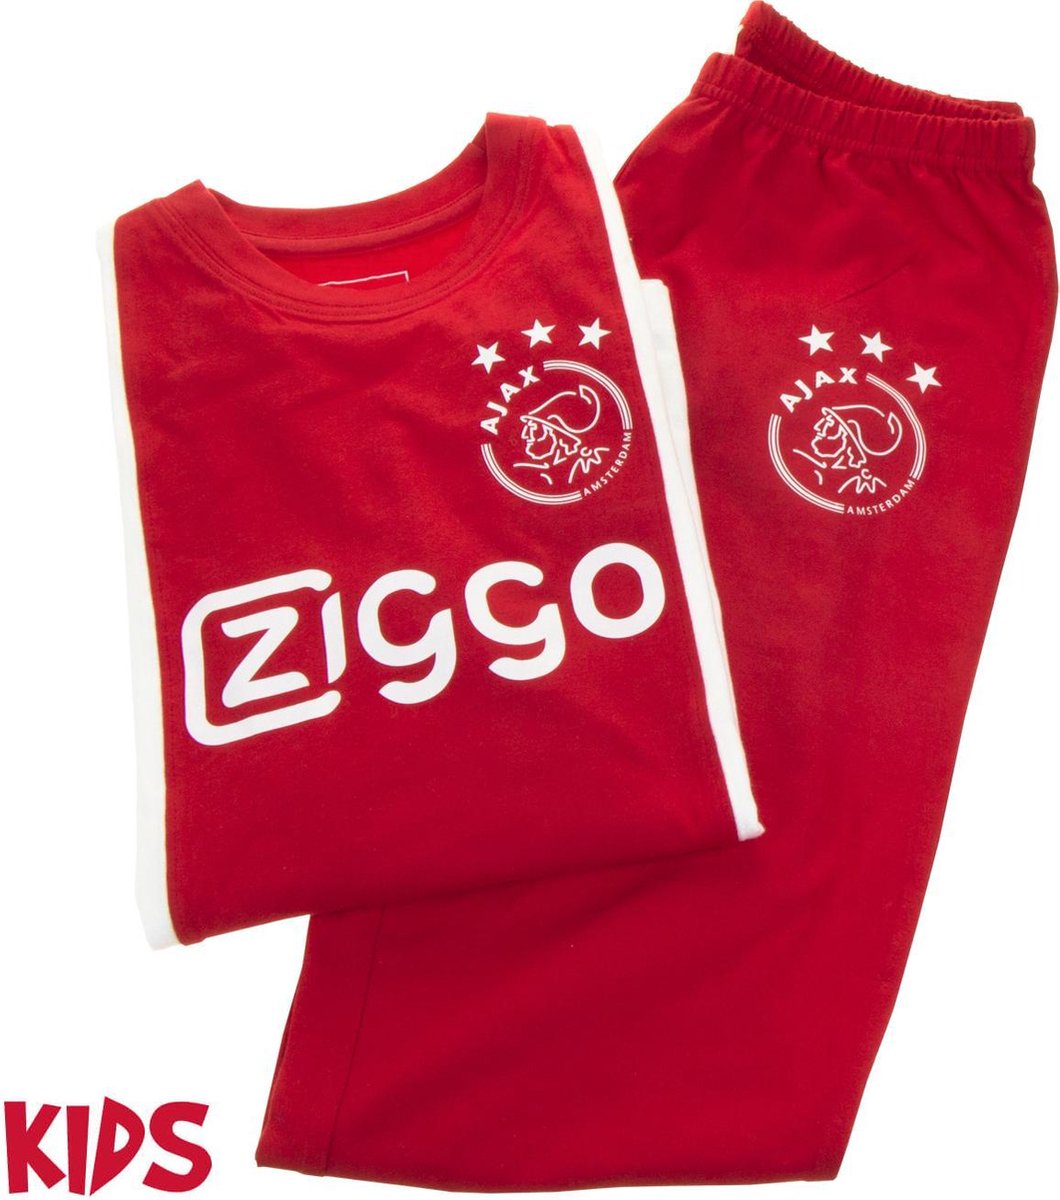 Ajax pyjama kinderen - rood/wit - maat 128 - Ajax